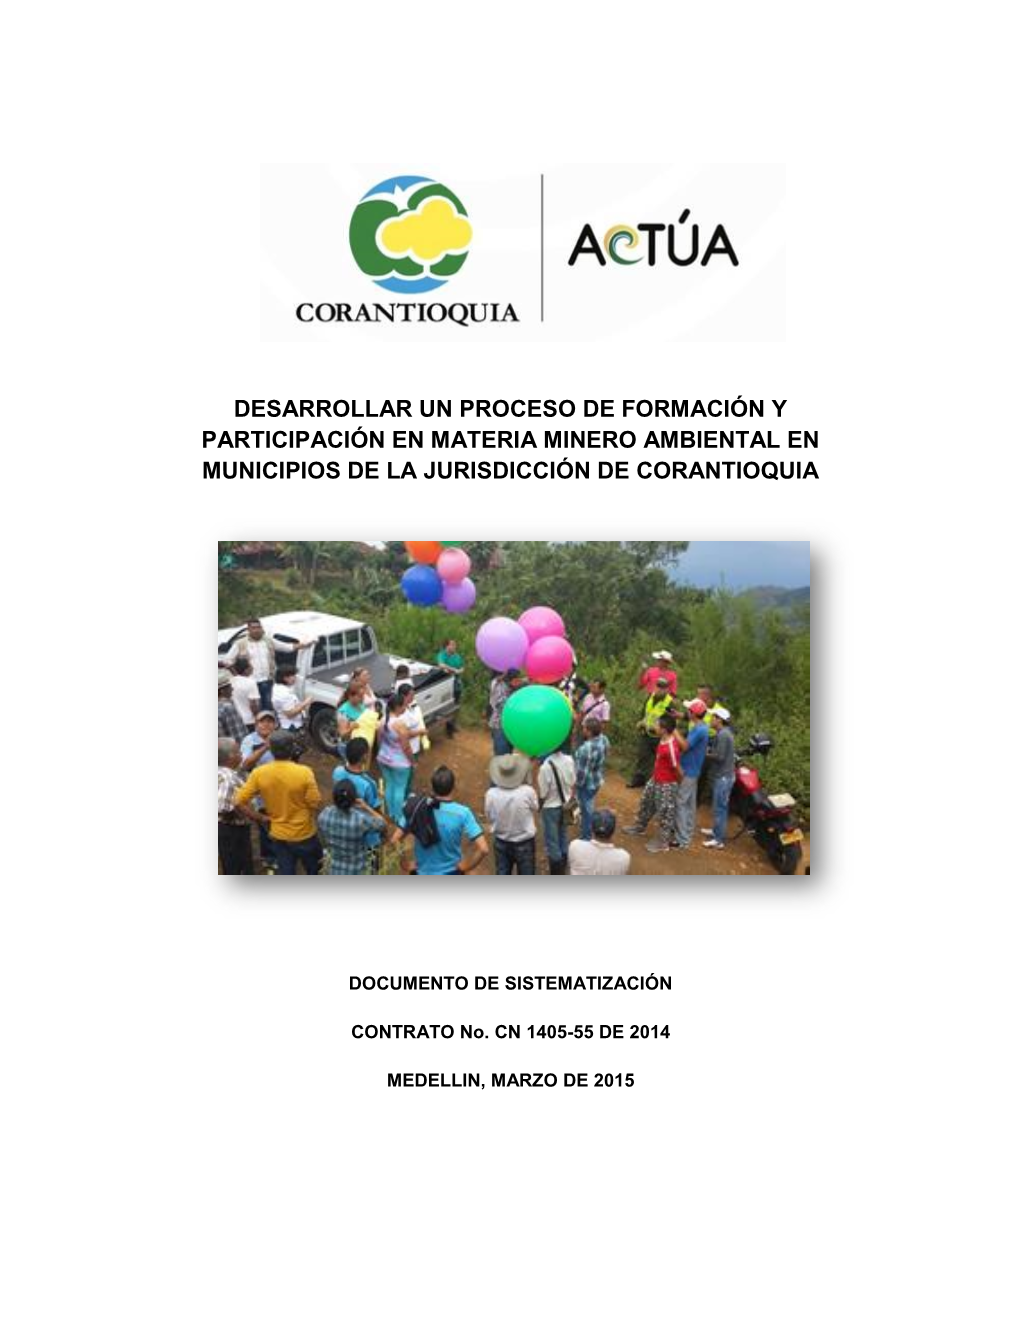 Desarrollar Un Proceso De Formación Y Participación En Materia Minero Ambiental En Municipios De La Jurisdicción De Corantioquia